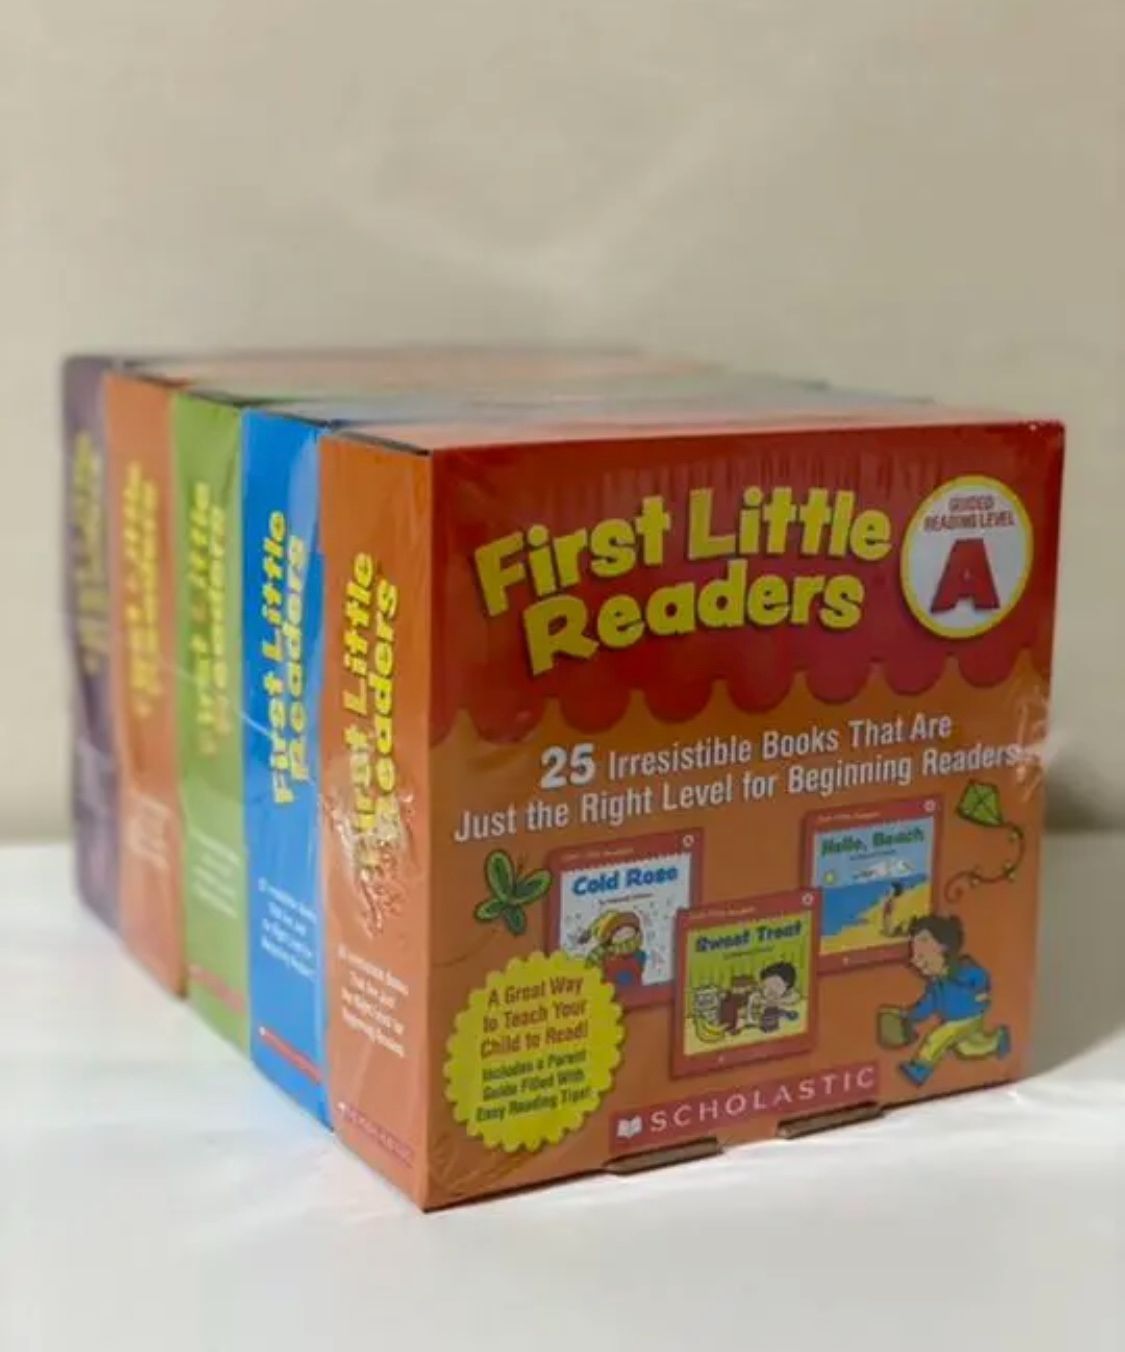 新品】first little readers A-EF フルセット CD付 英語絵本 英語教材 